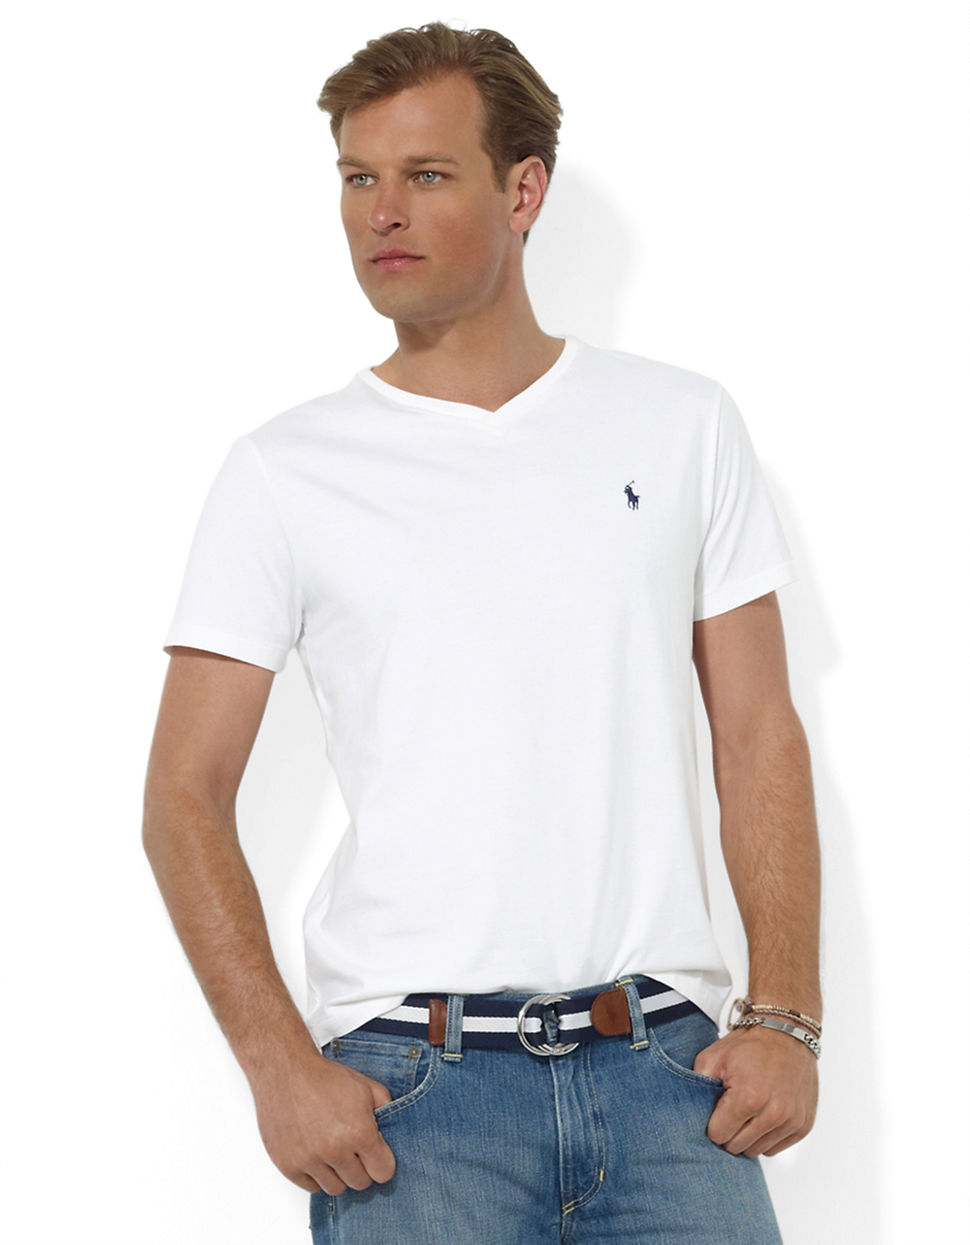 Lyst - Polo Ralph Lauren Short-Sleeved V-Neck T-Shirt in Gray for Men